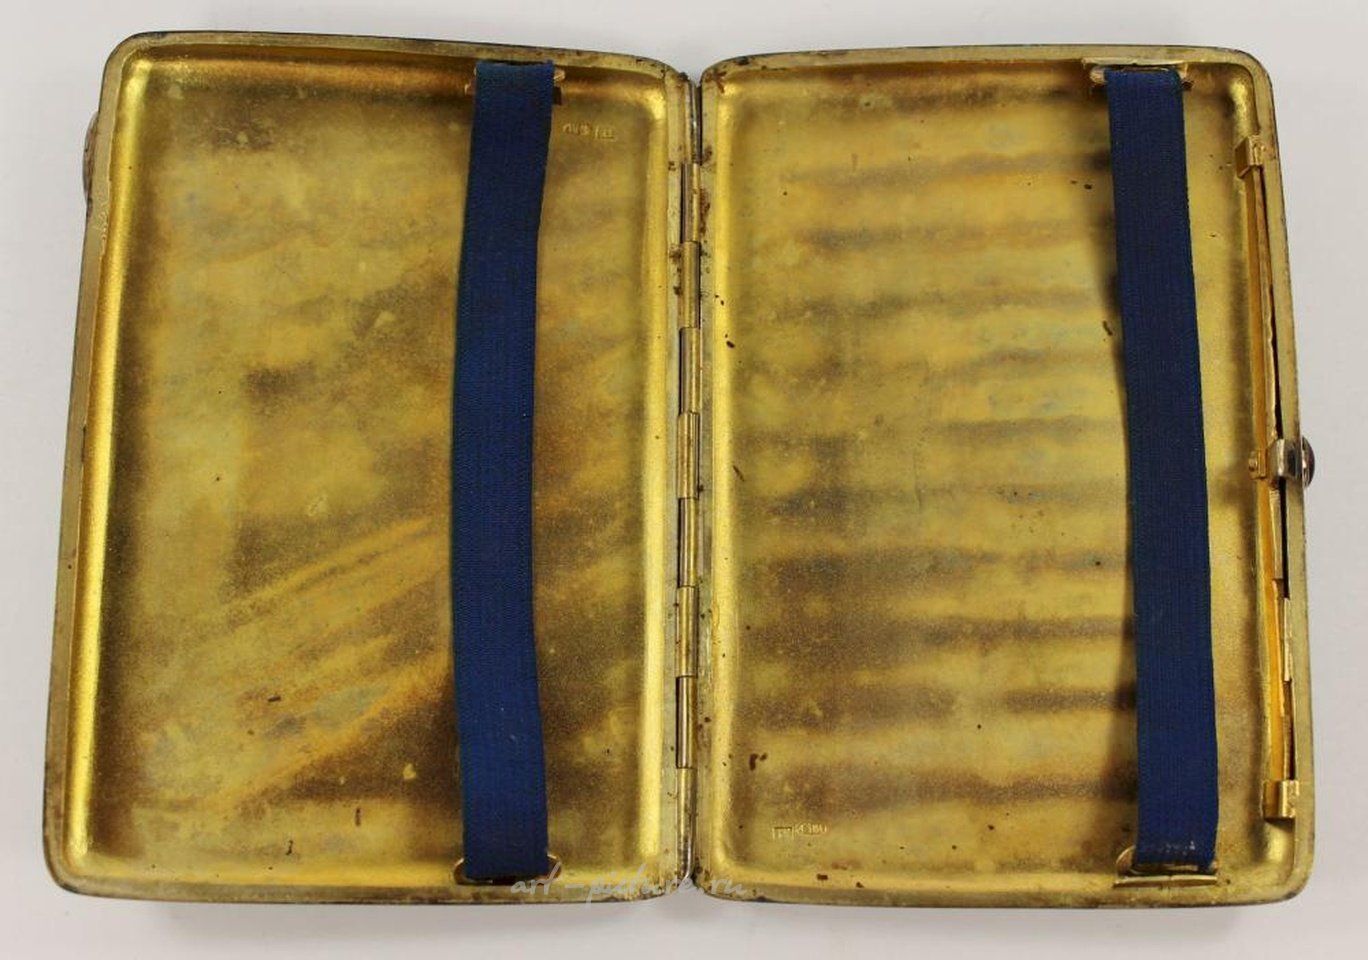 Русское серебро , Русская серебряная (84 золотника - 0,875) папиросница с гравировкой